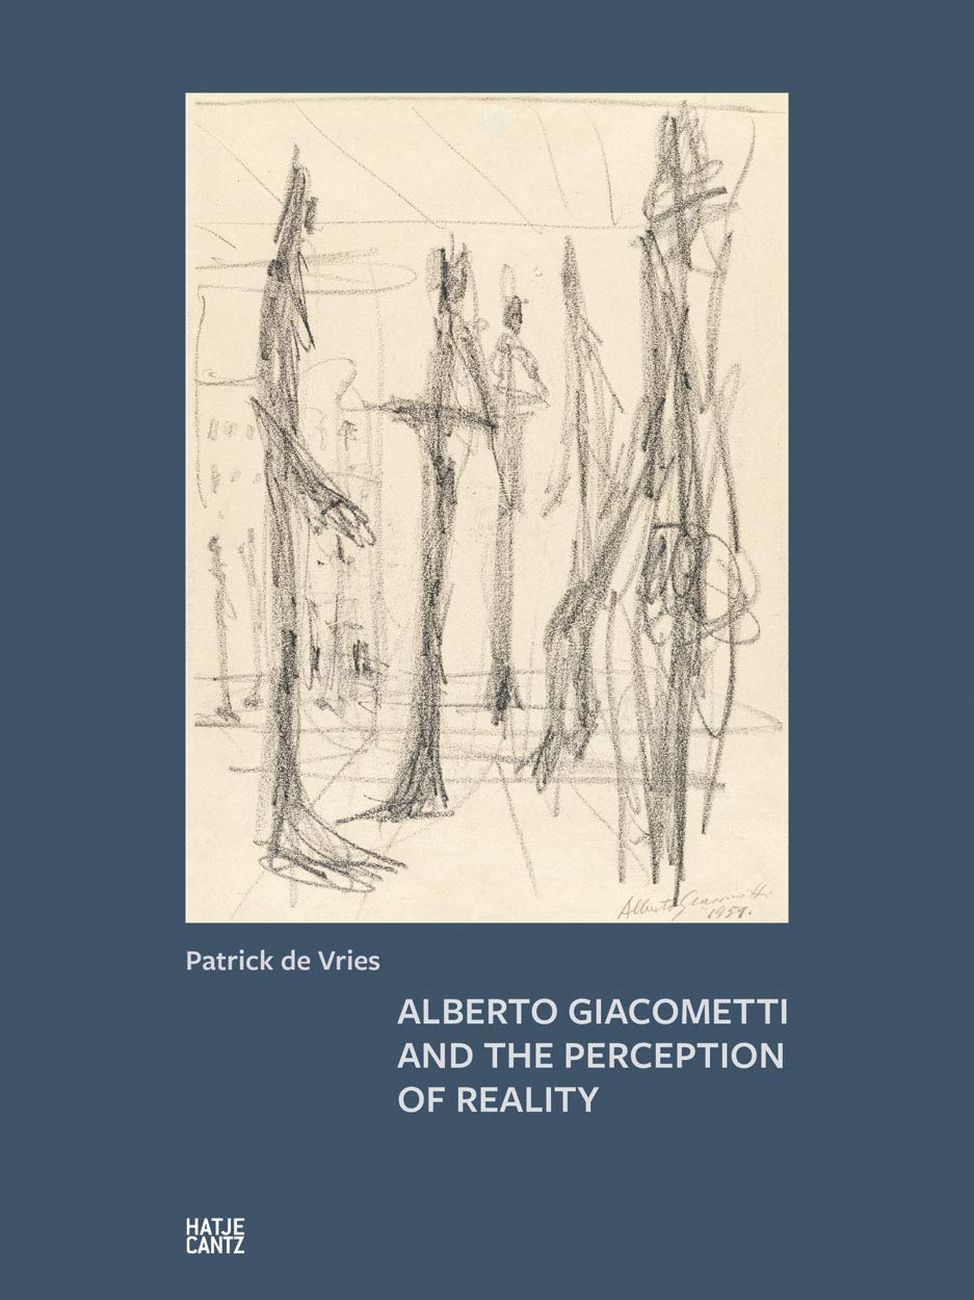 Patrick de Vries – Alberto Giacometti and the Perception of Reality (Hatje Cantz, Berlino 2019)